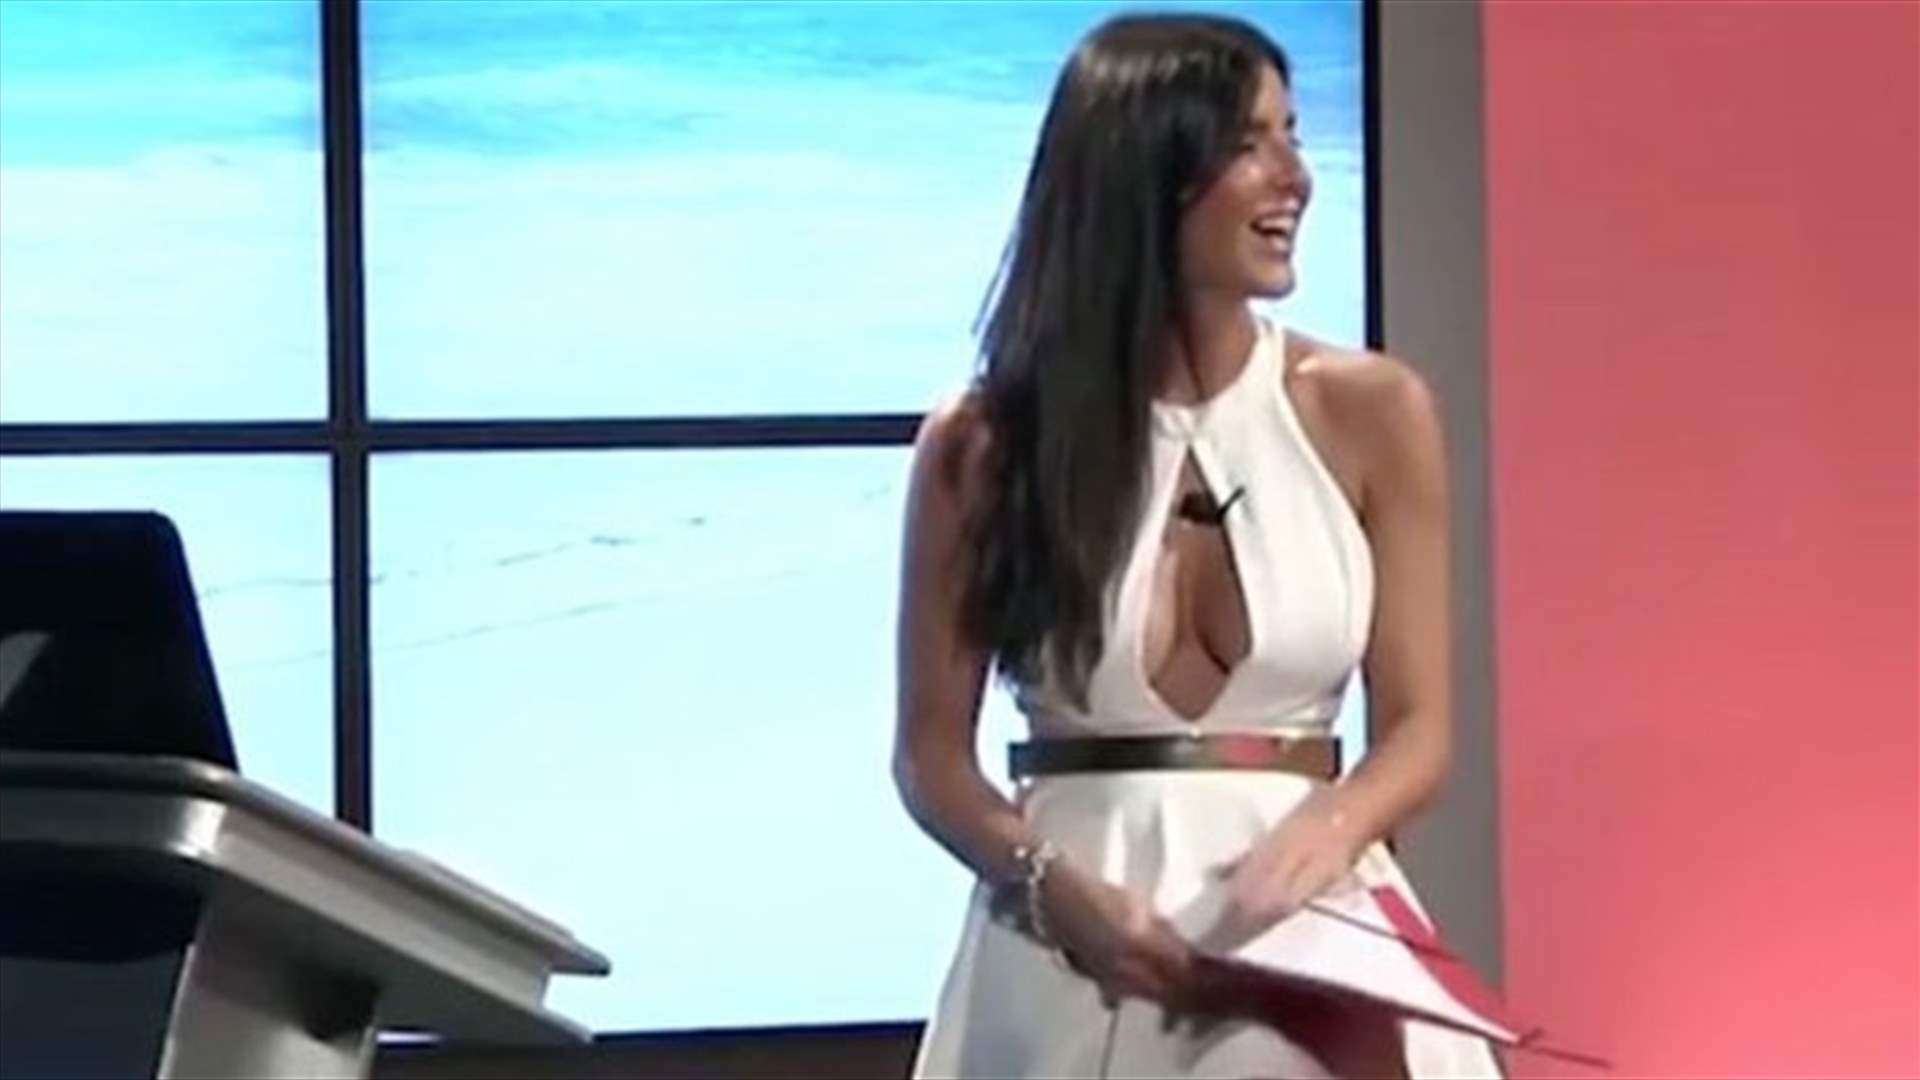 بالفيديو: مذيعة إيطالية تُظهر سروالها الداخلي... عن طريق الخطأ!